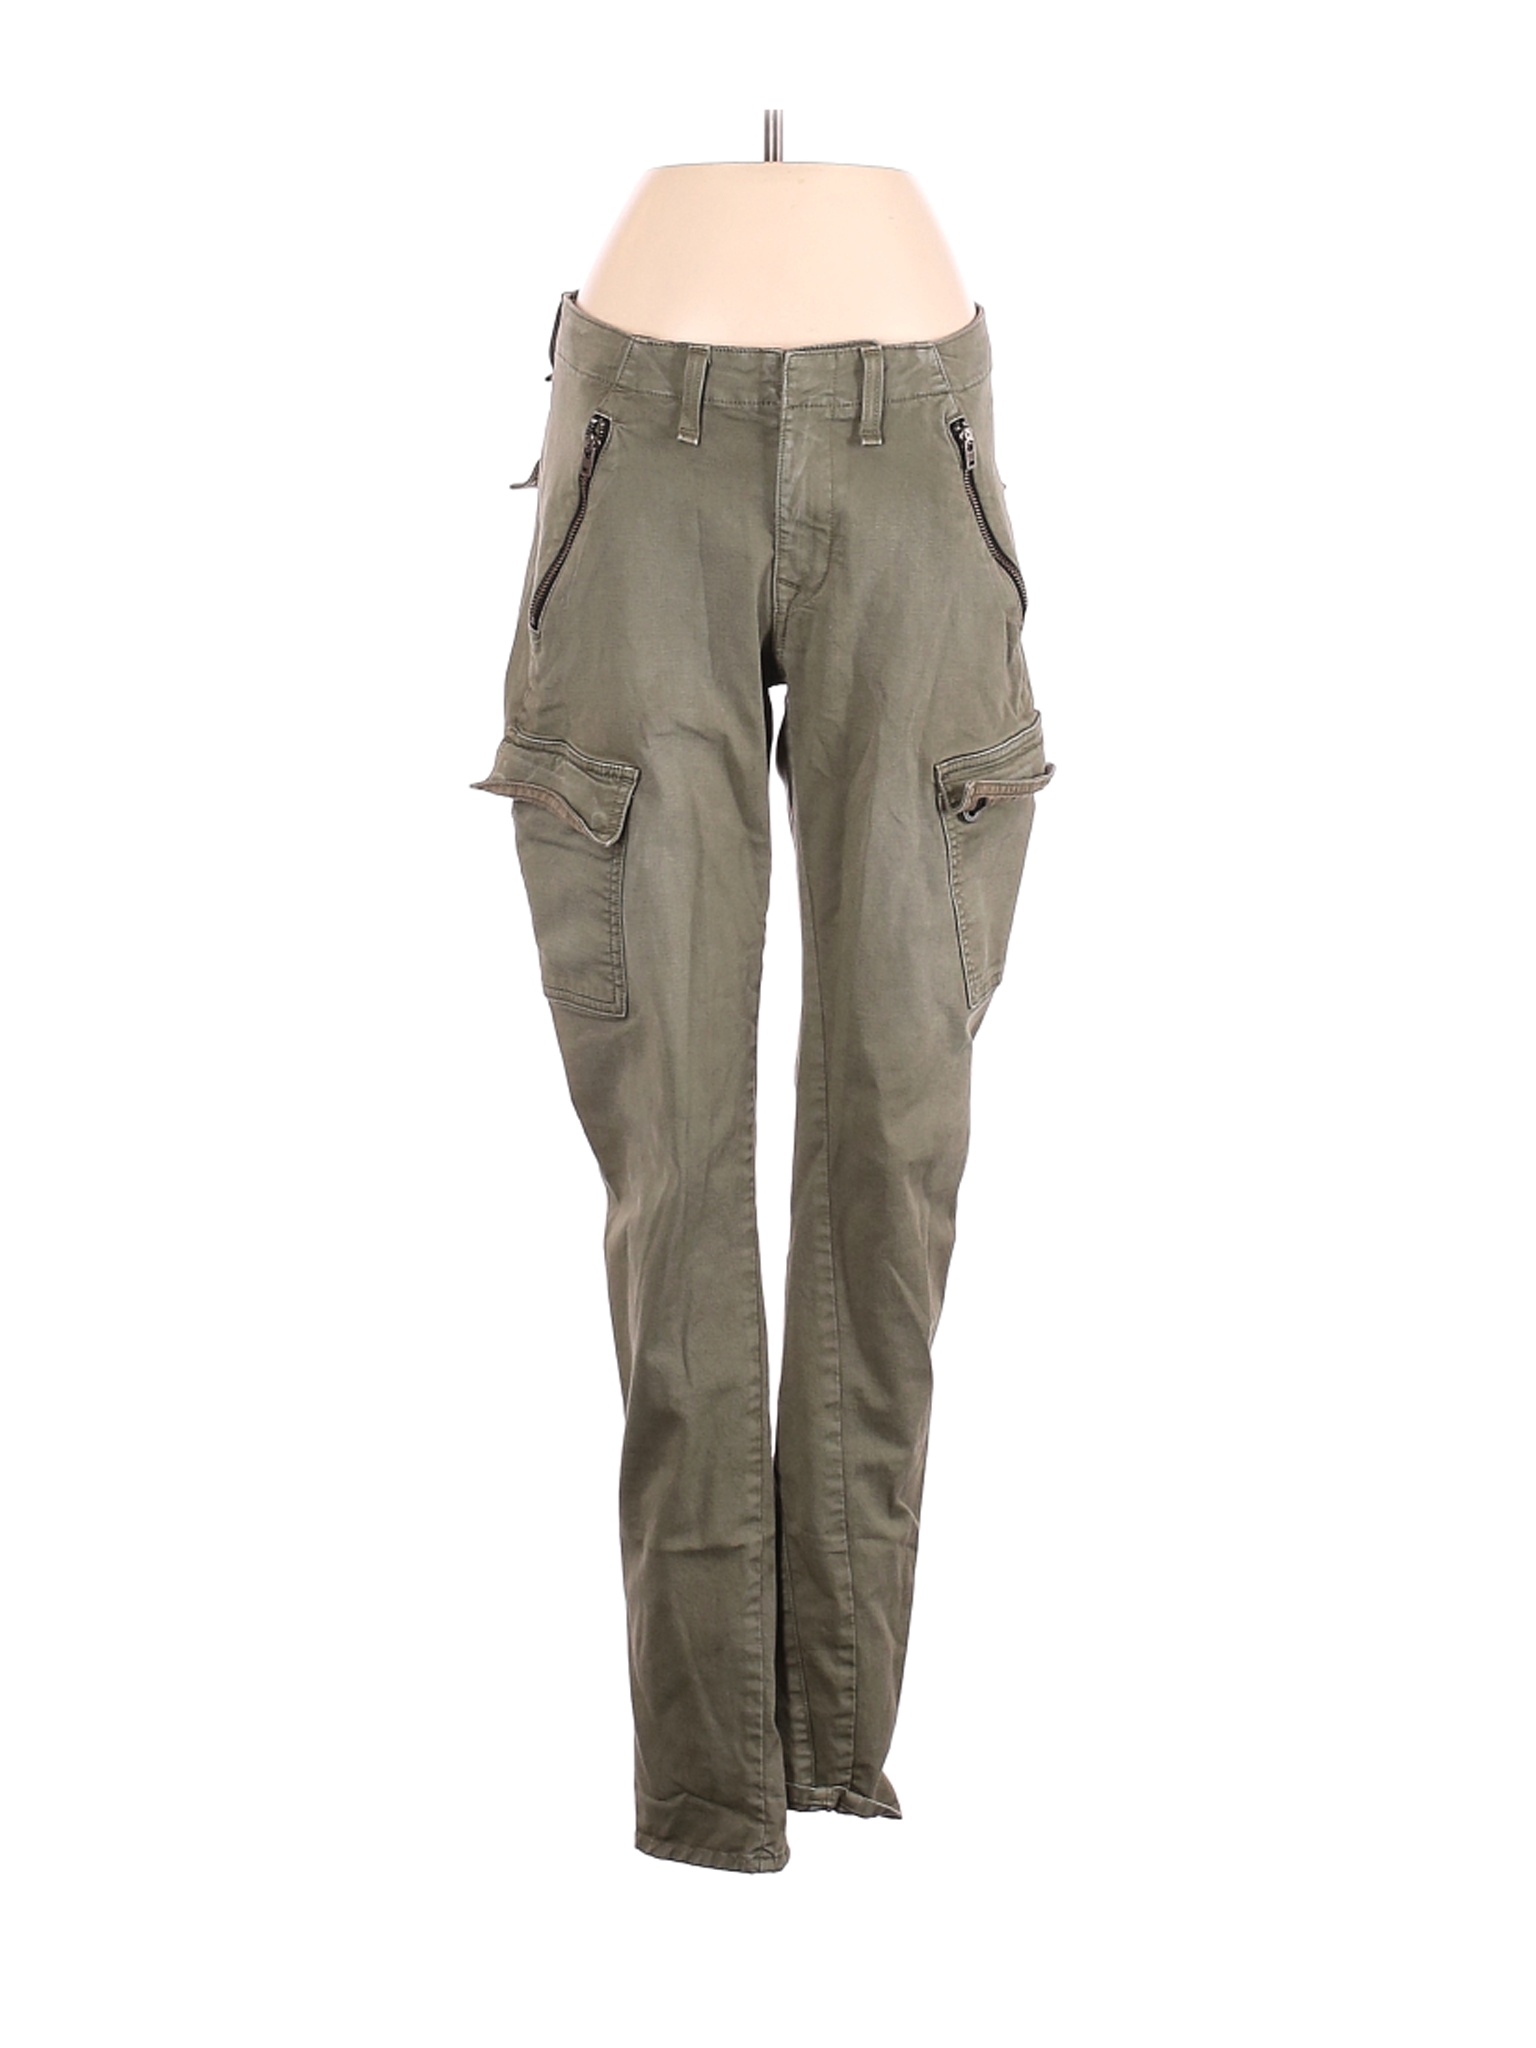 Rag & Bone/JEAN Women Green Cargo Pants 27W | eBay